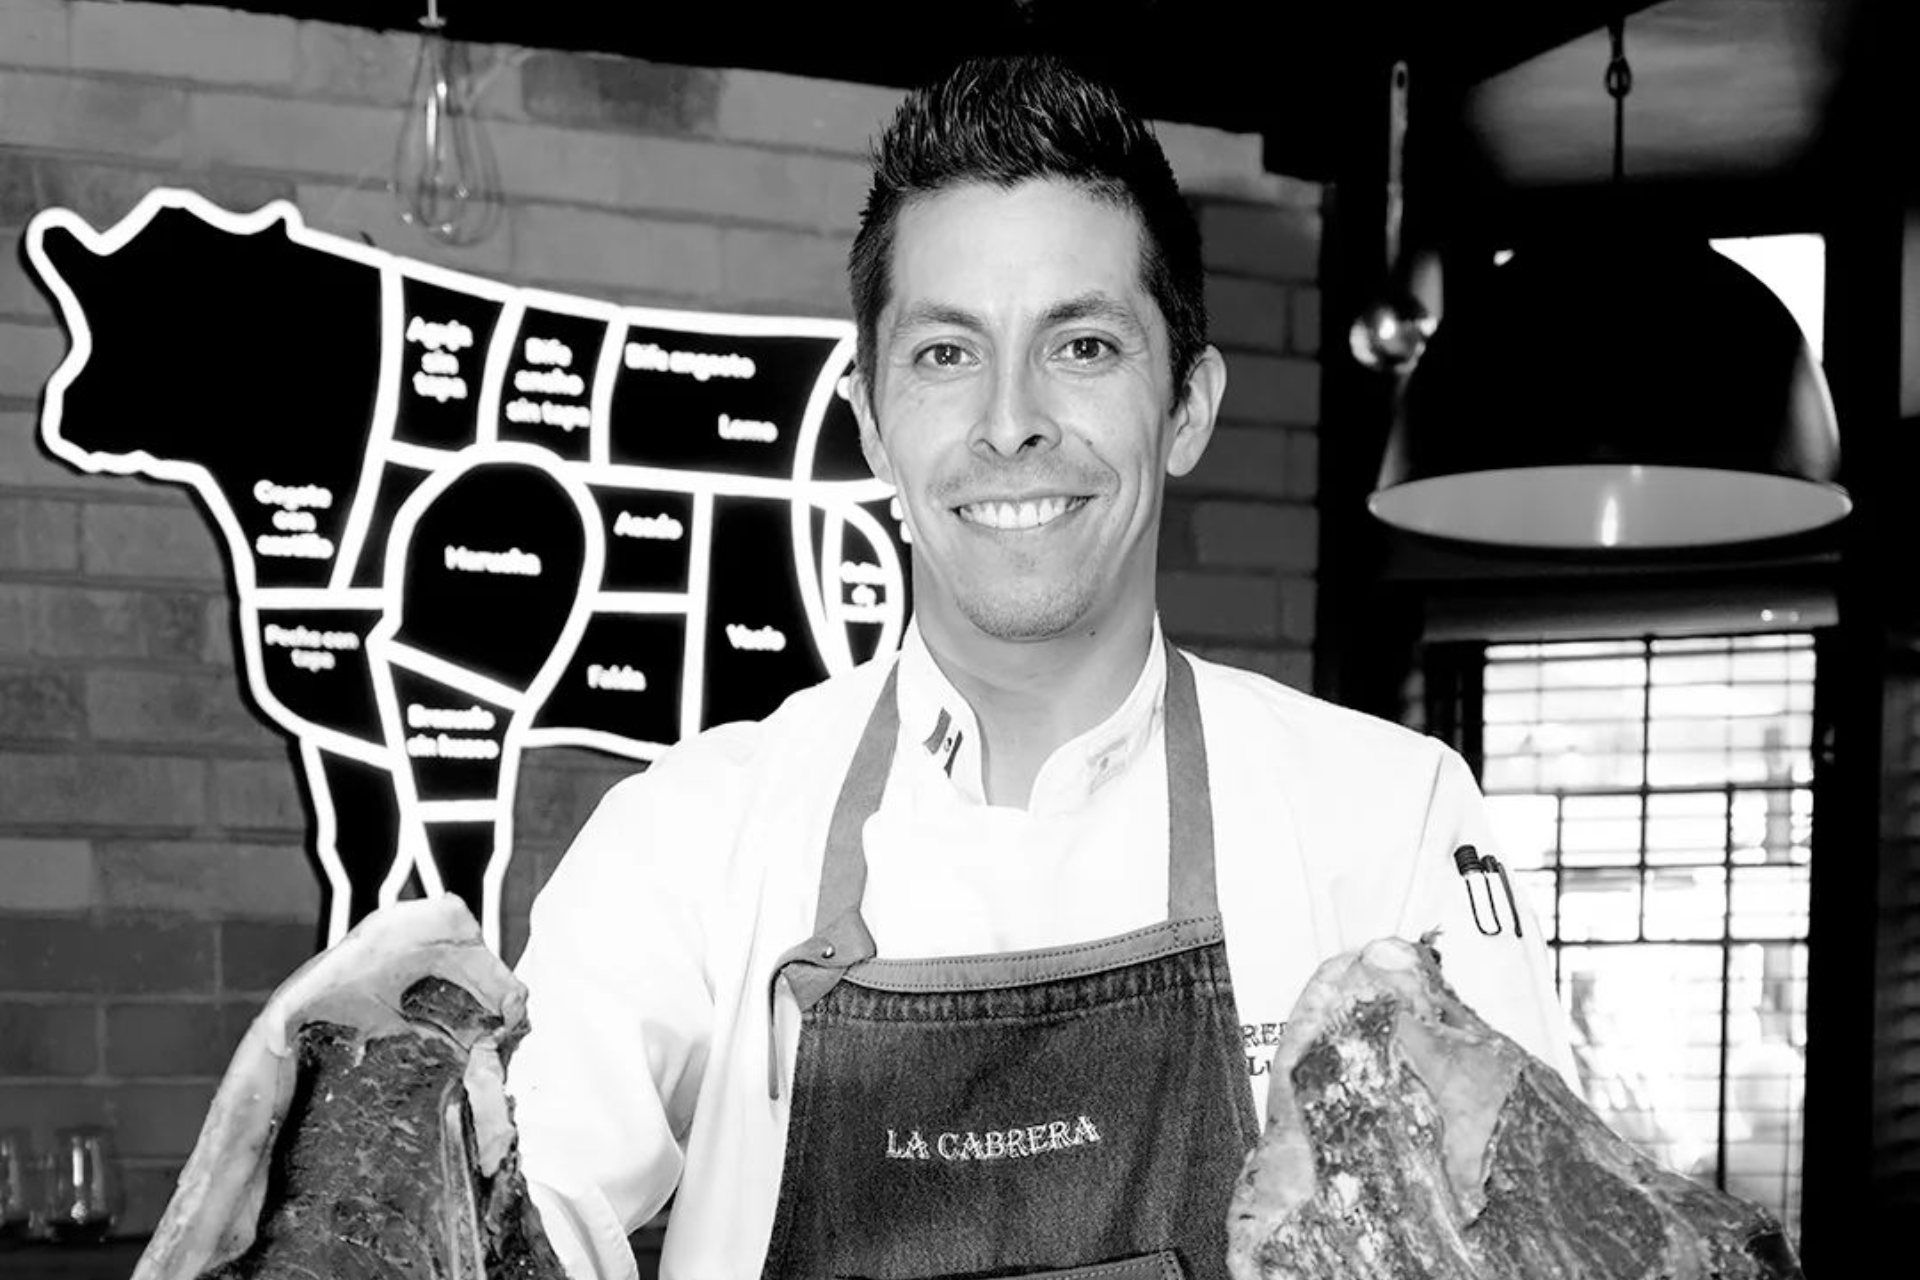 Murió el chef mexicano Daniel Lugo en accidente vial en Colombia